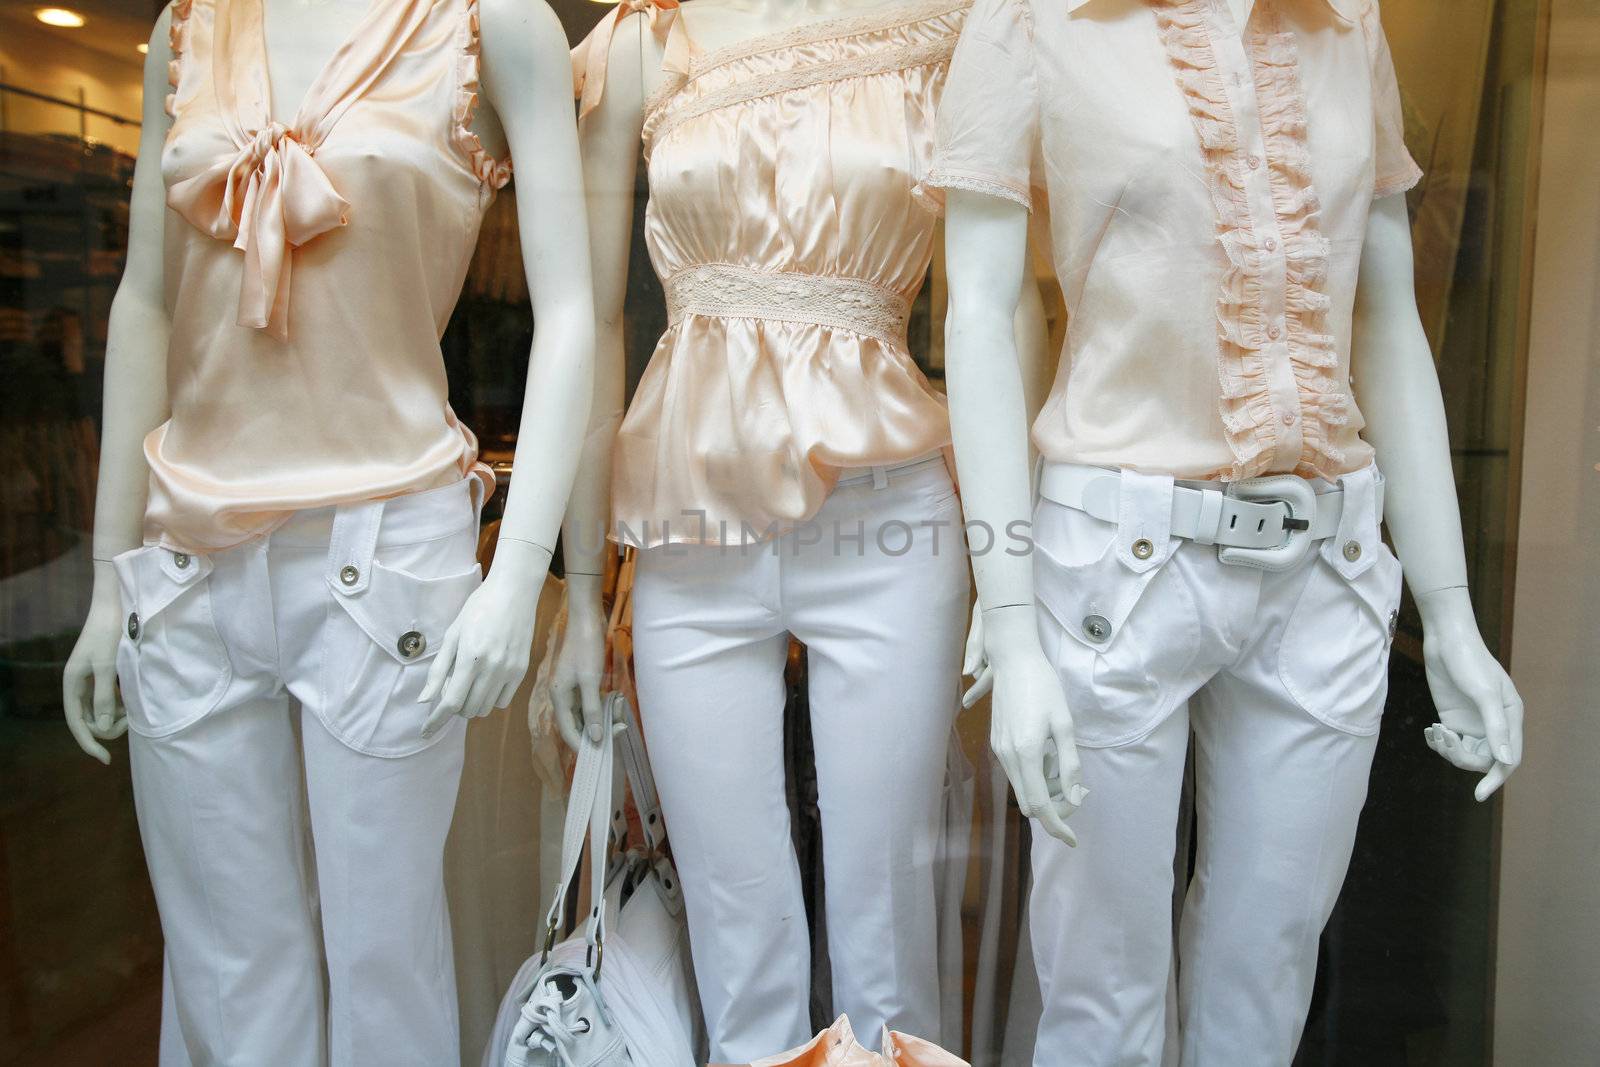 Fashion through a store window - Paris - France.